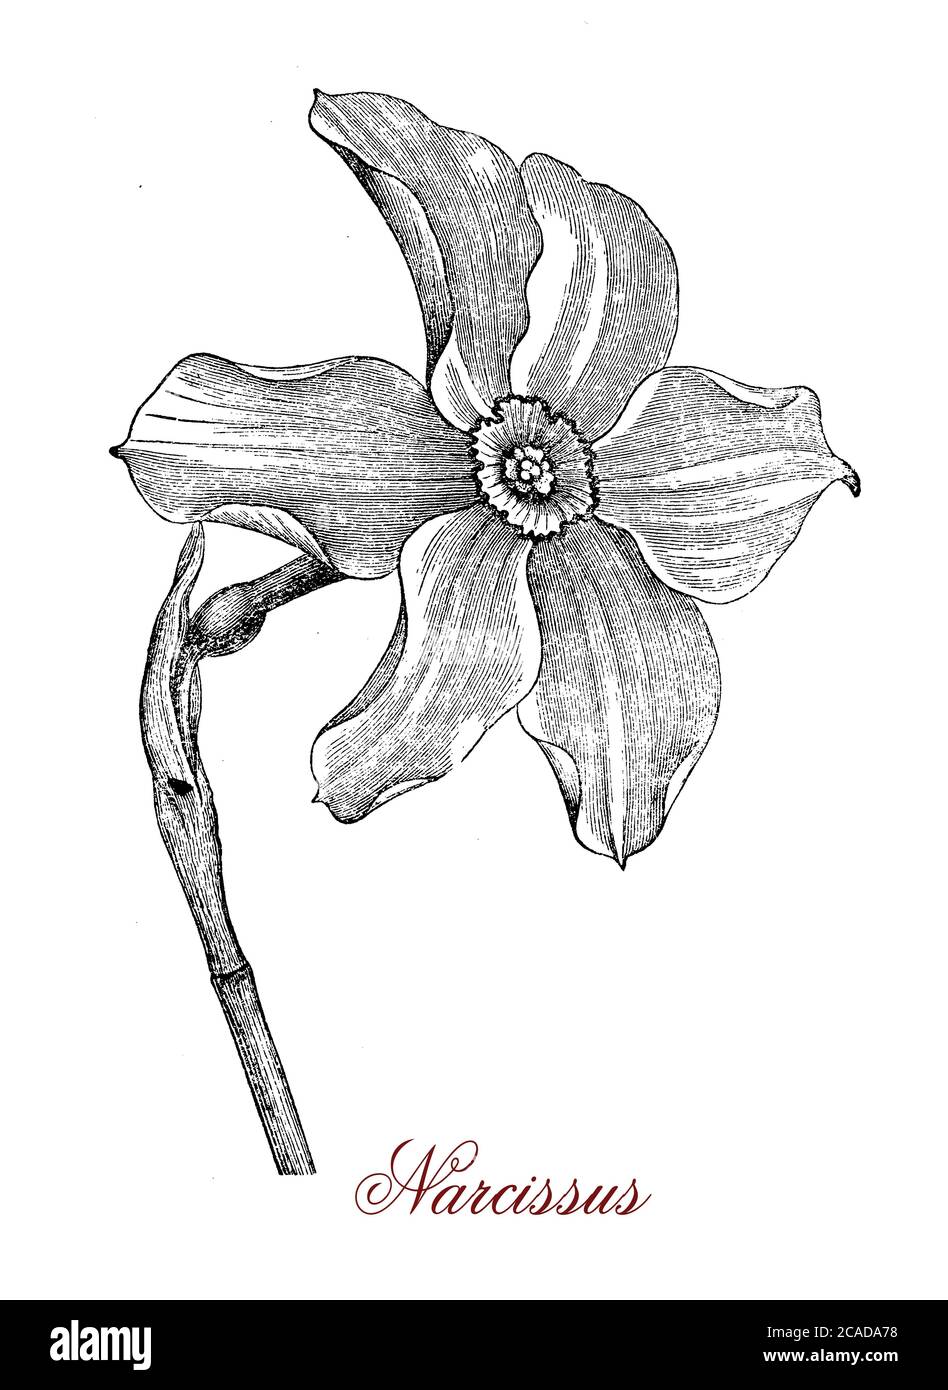 La flor de Narcissus, nombre común daffodil o jonquil, de la planta perenne floreciente de narcisus, es una flor conspicua con seis tépalos similares a los pétalos coronados por una corona en forma de trompeta generalmente blanca o amarilla. Foto de stock